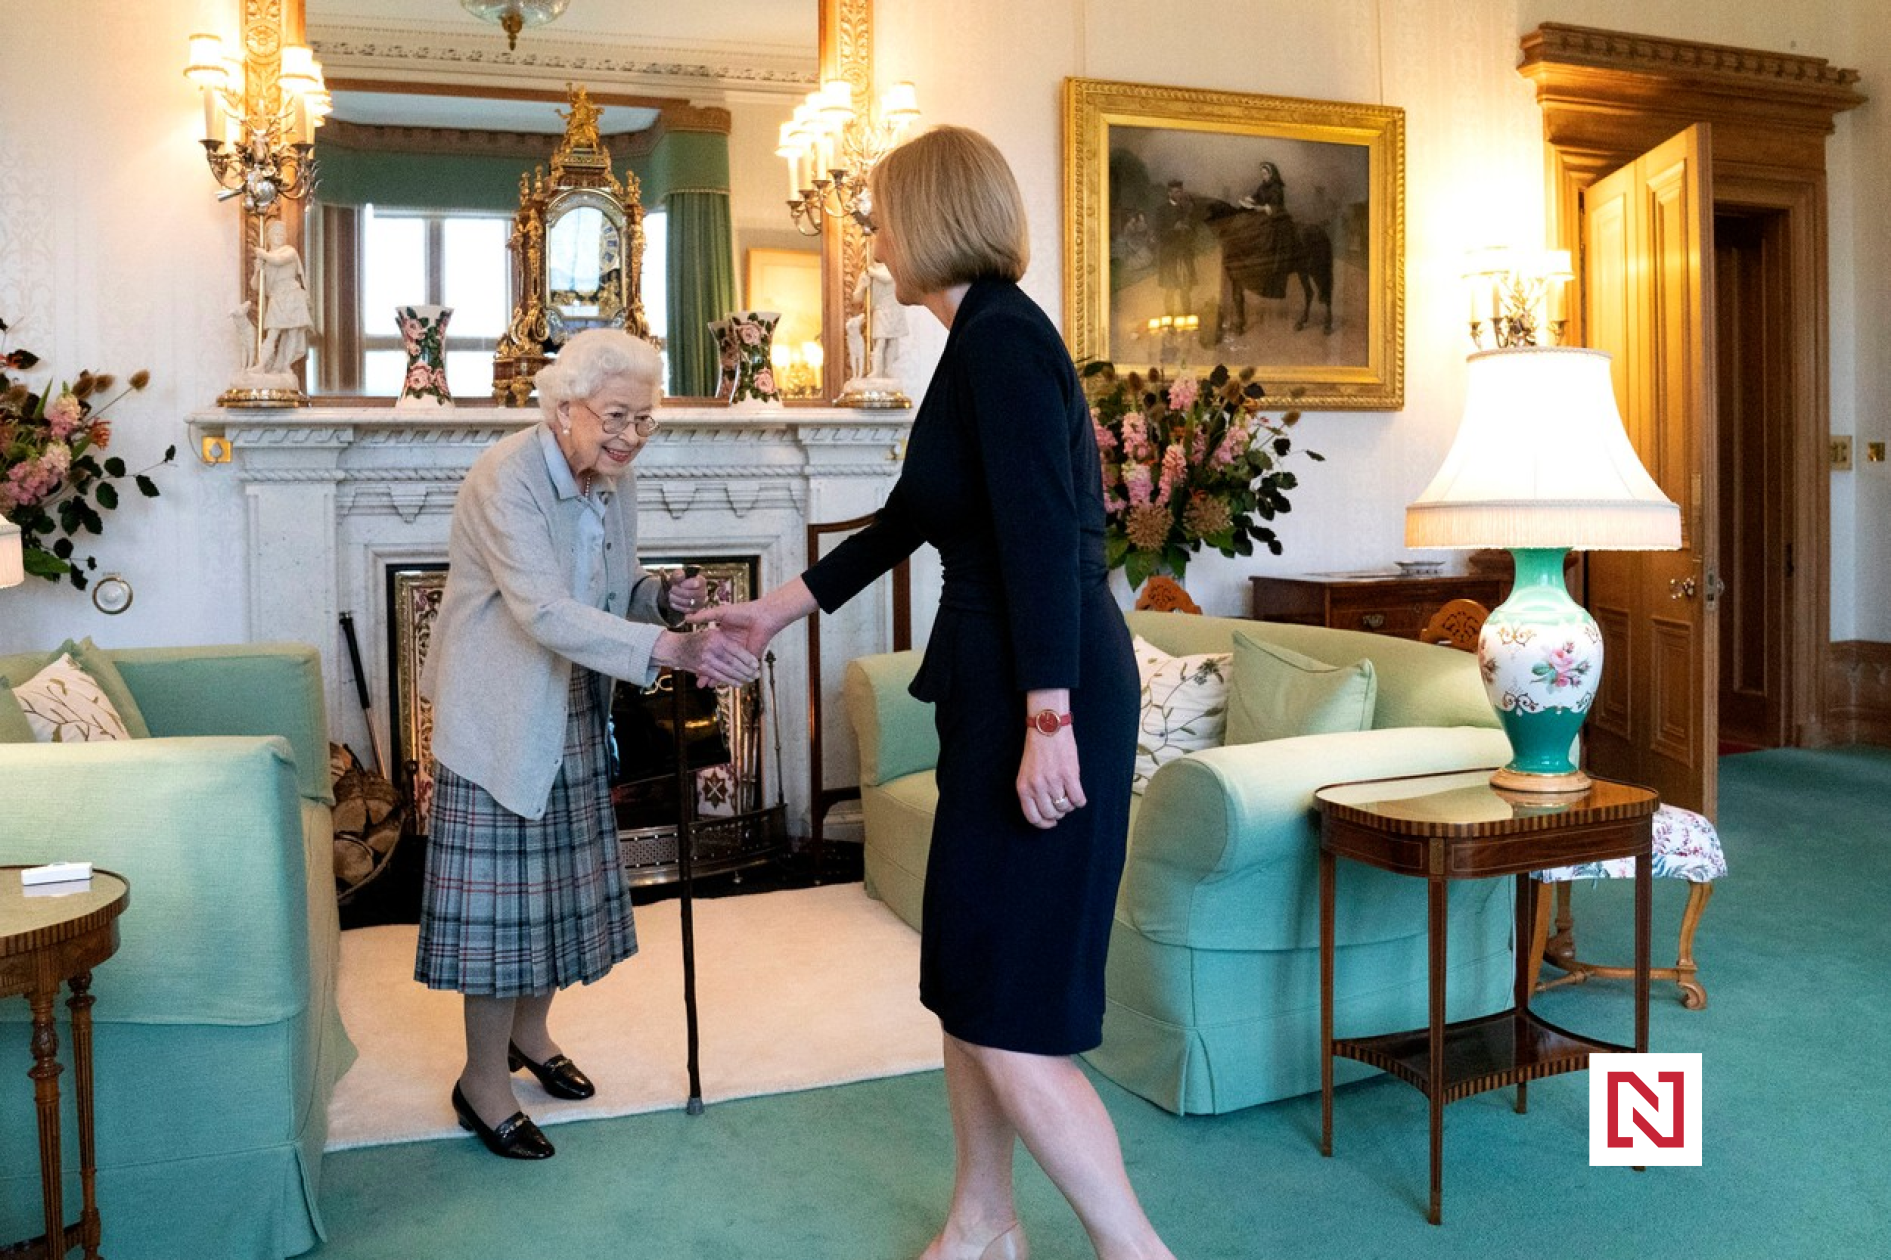 Ärzte sind besorgt über den Gesundheitszustand der britischen Königin Elizabeth II., ihre Familie reist nach Schottland